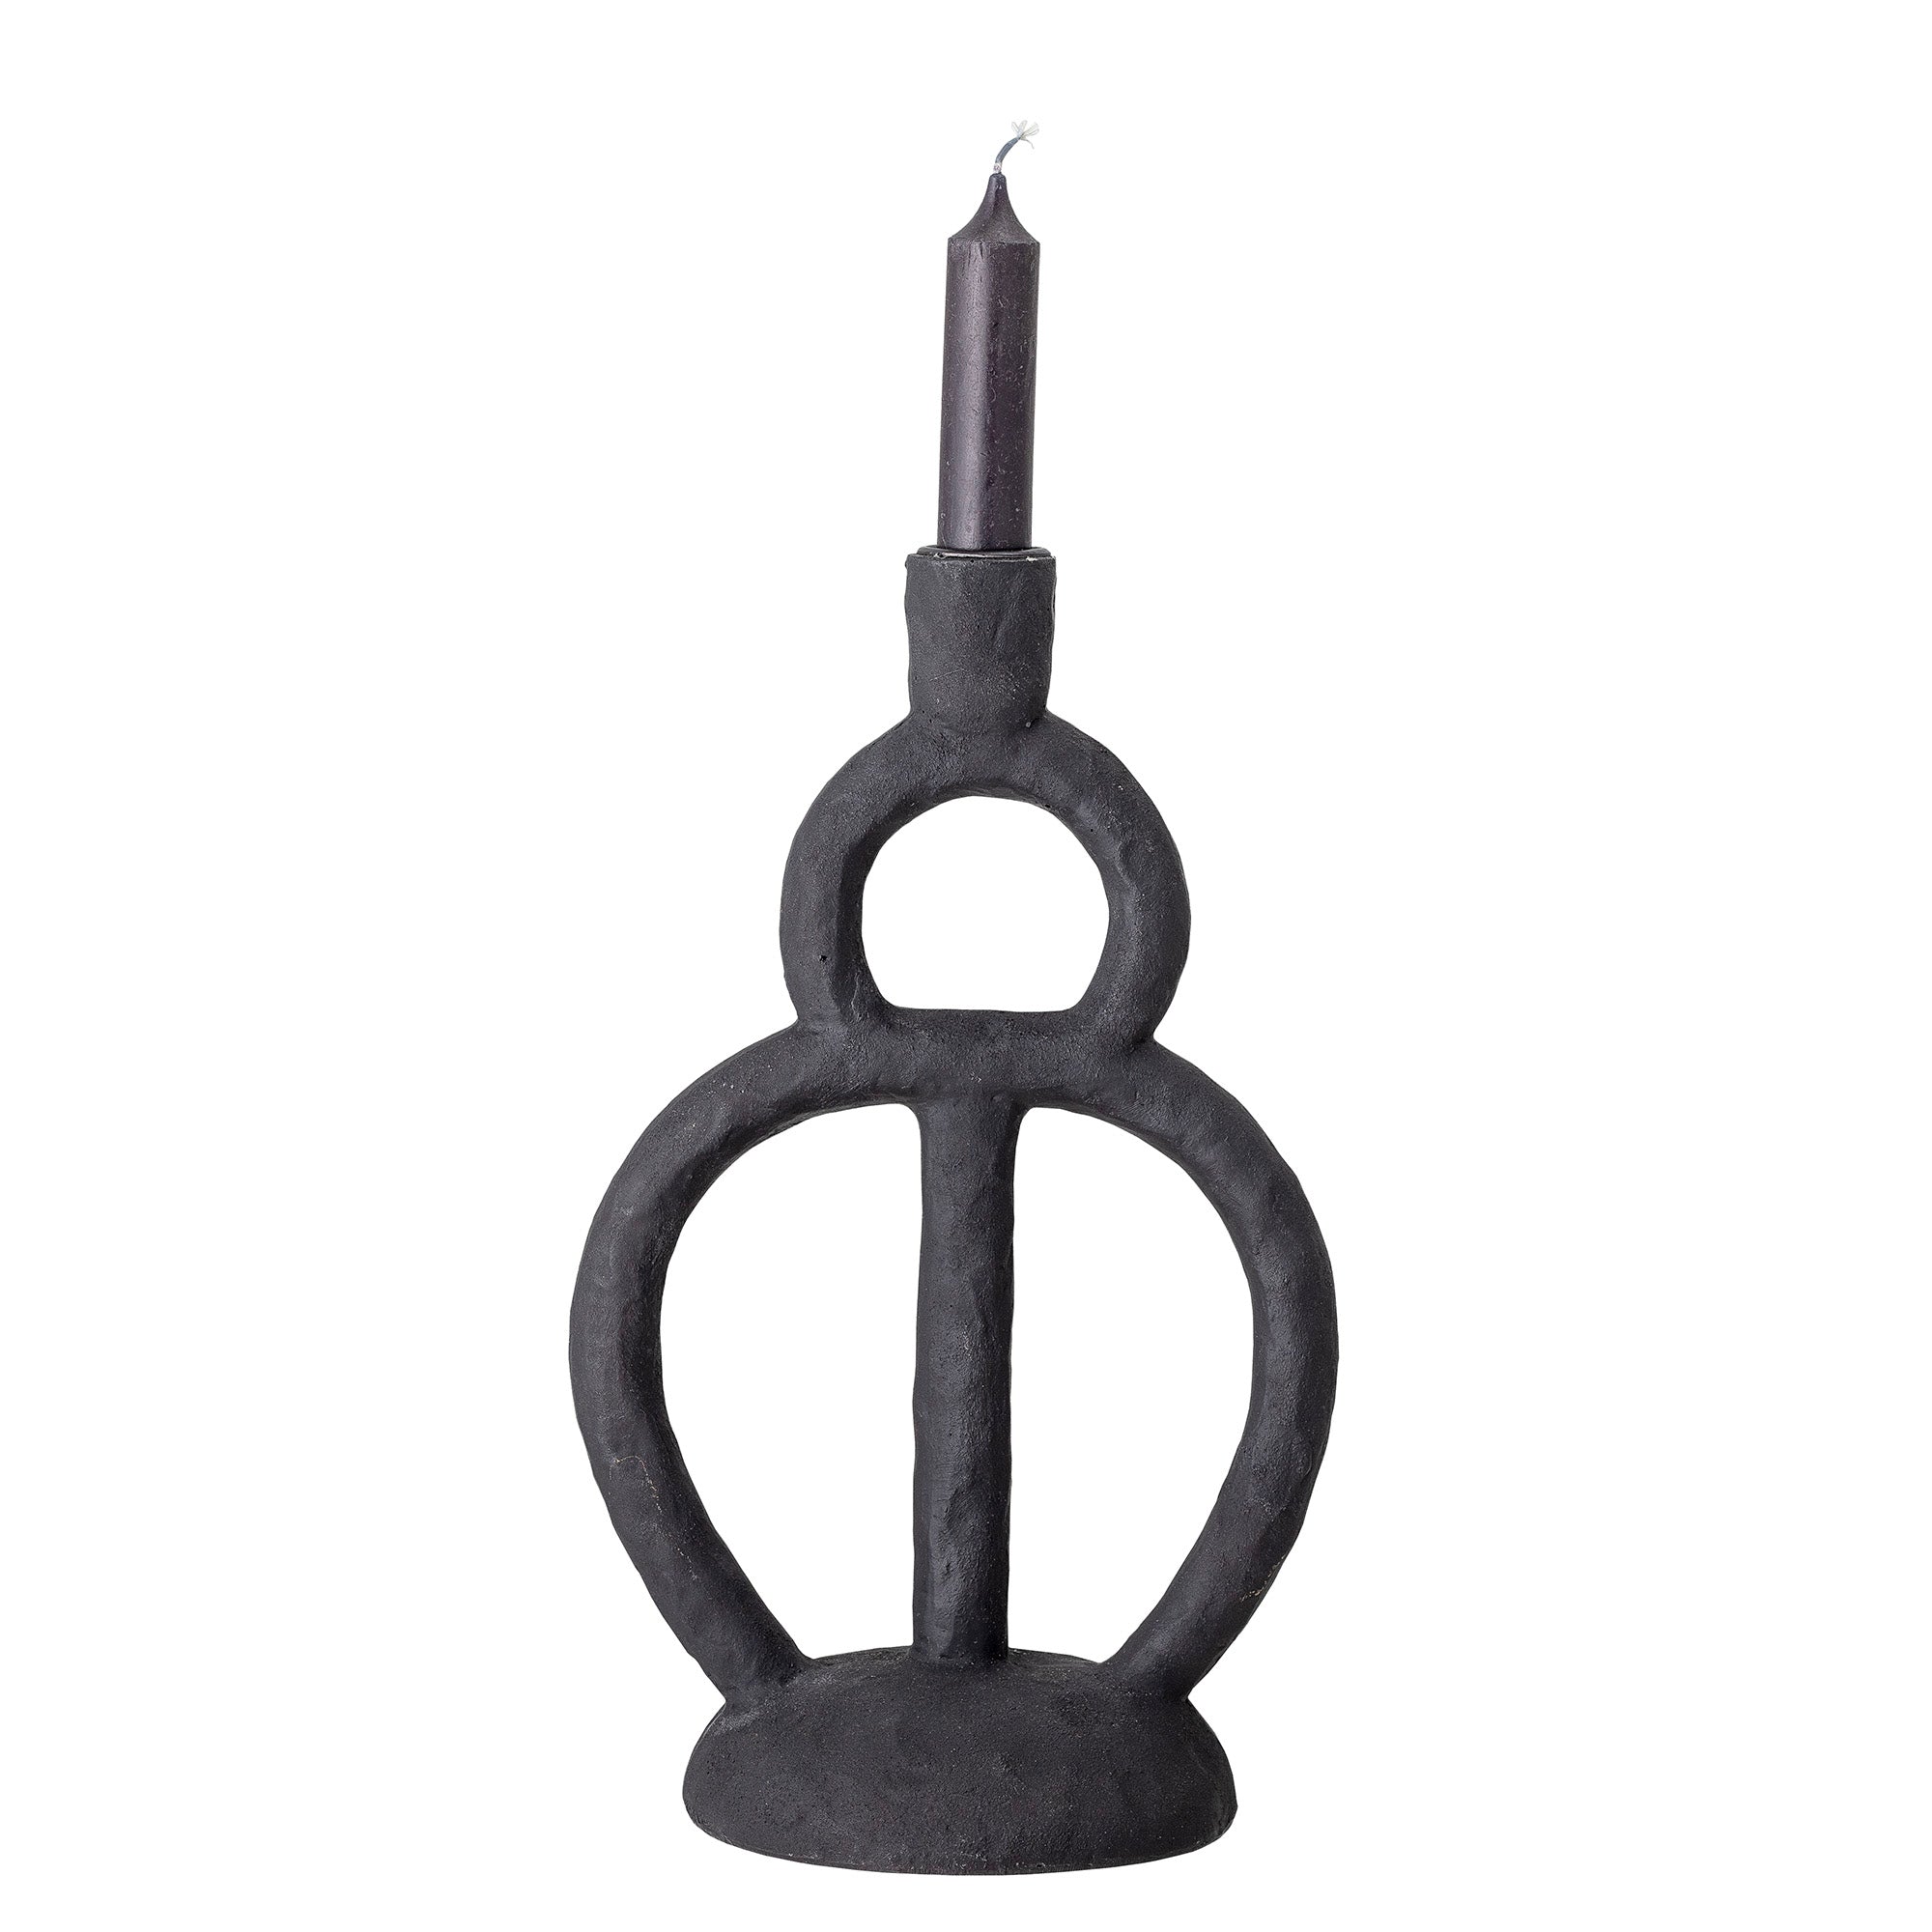 RIMIN candle holder black